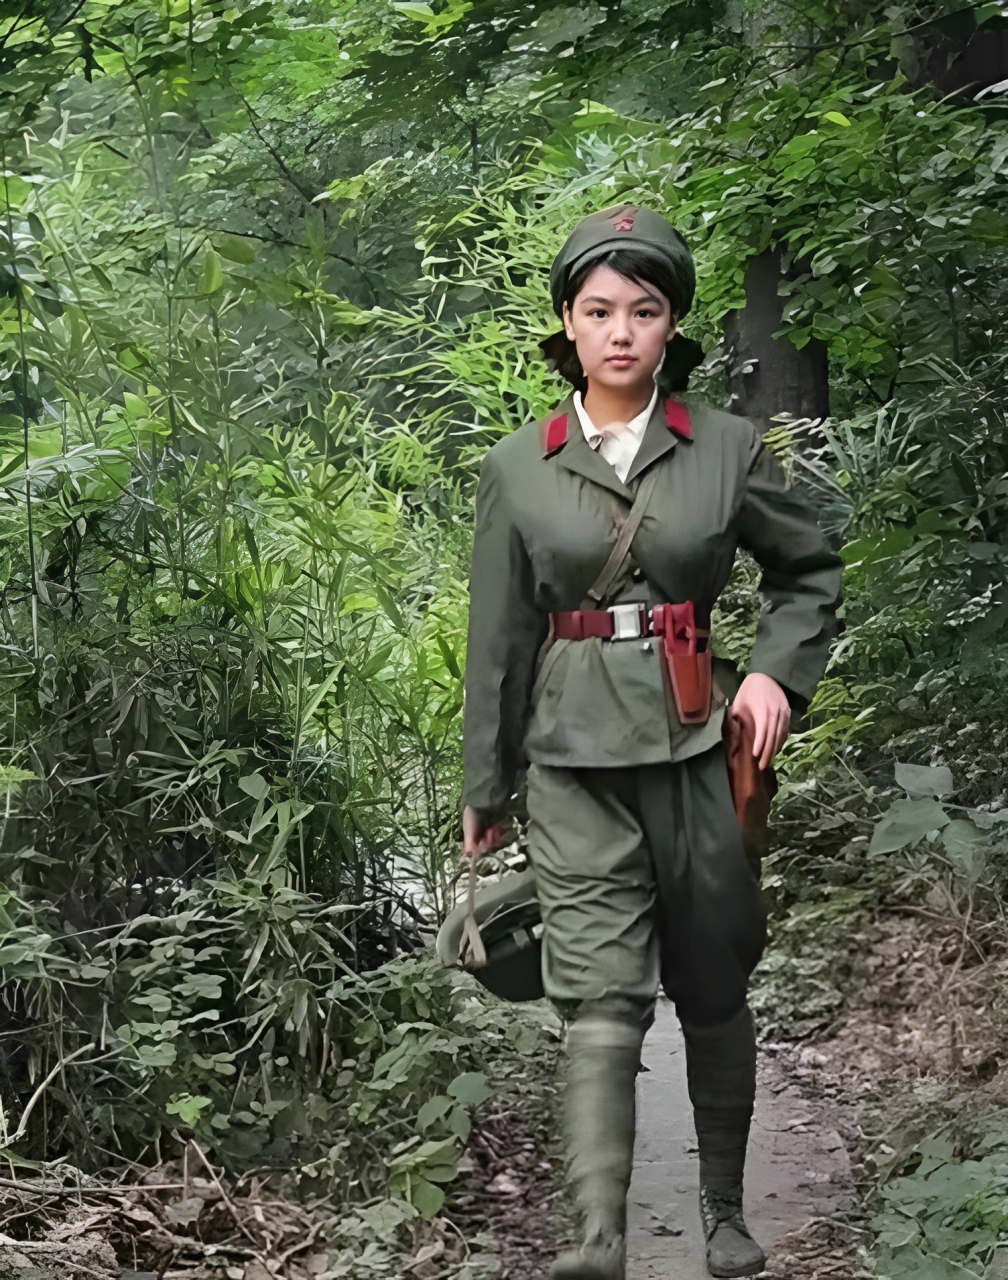 80年代的一张老照片里,有位解放军女战士漂亮得与众不同,并且穿上军装